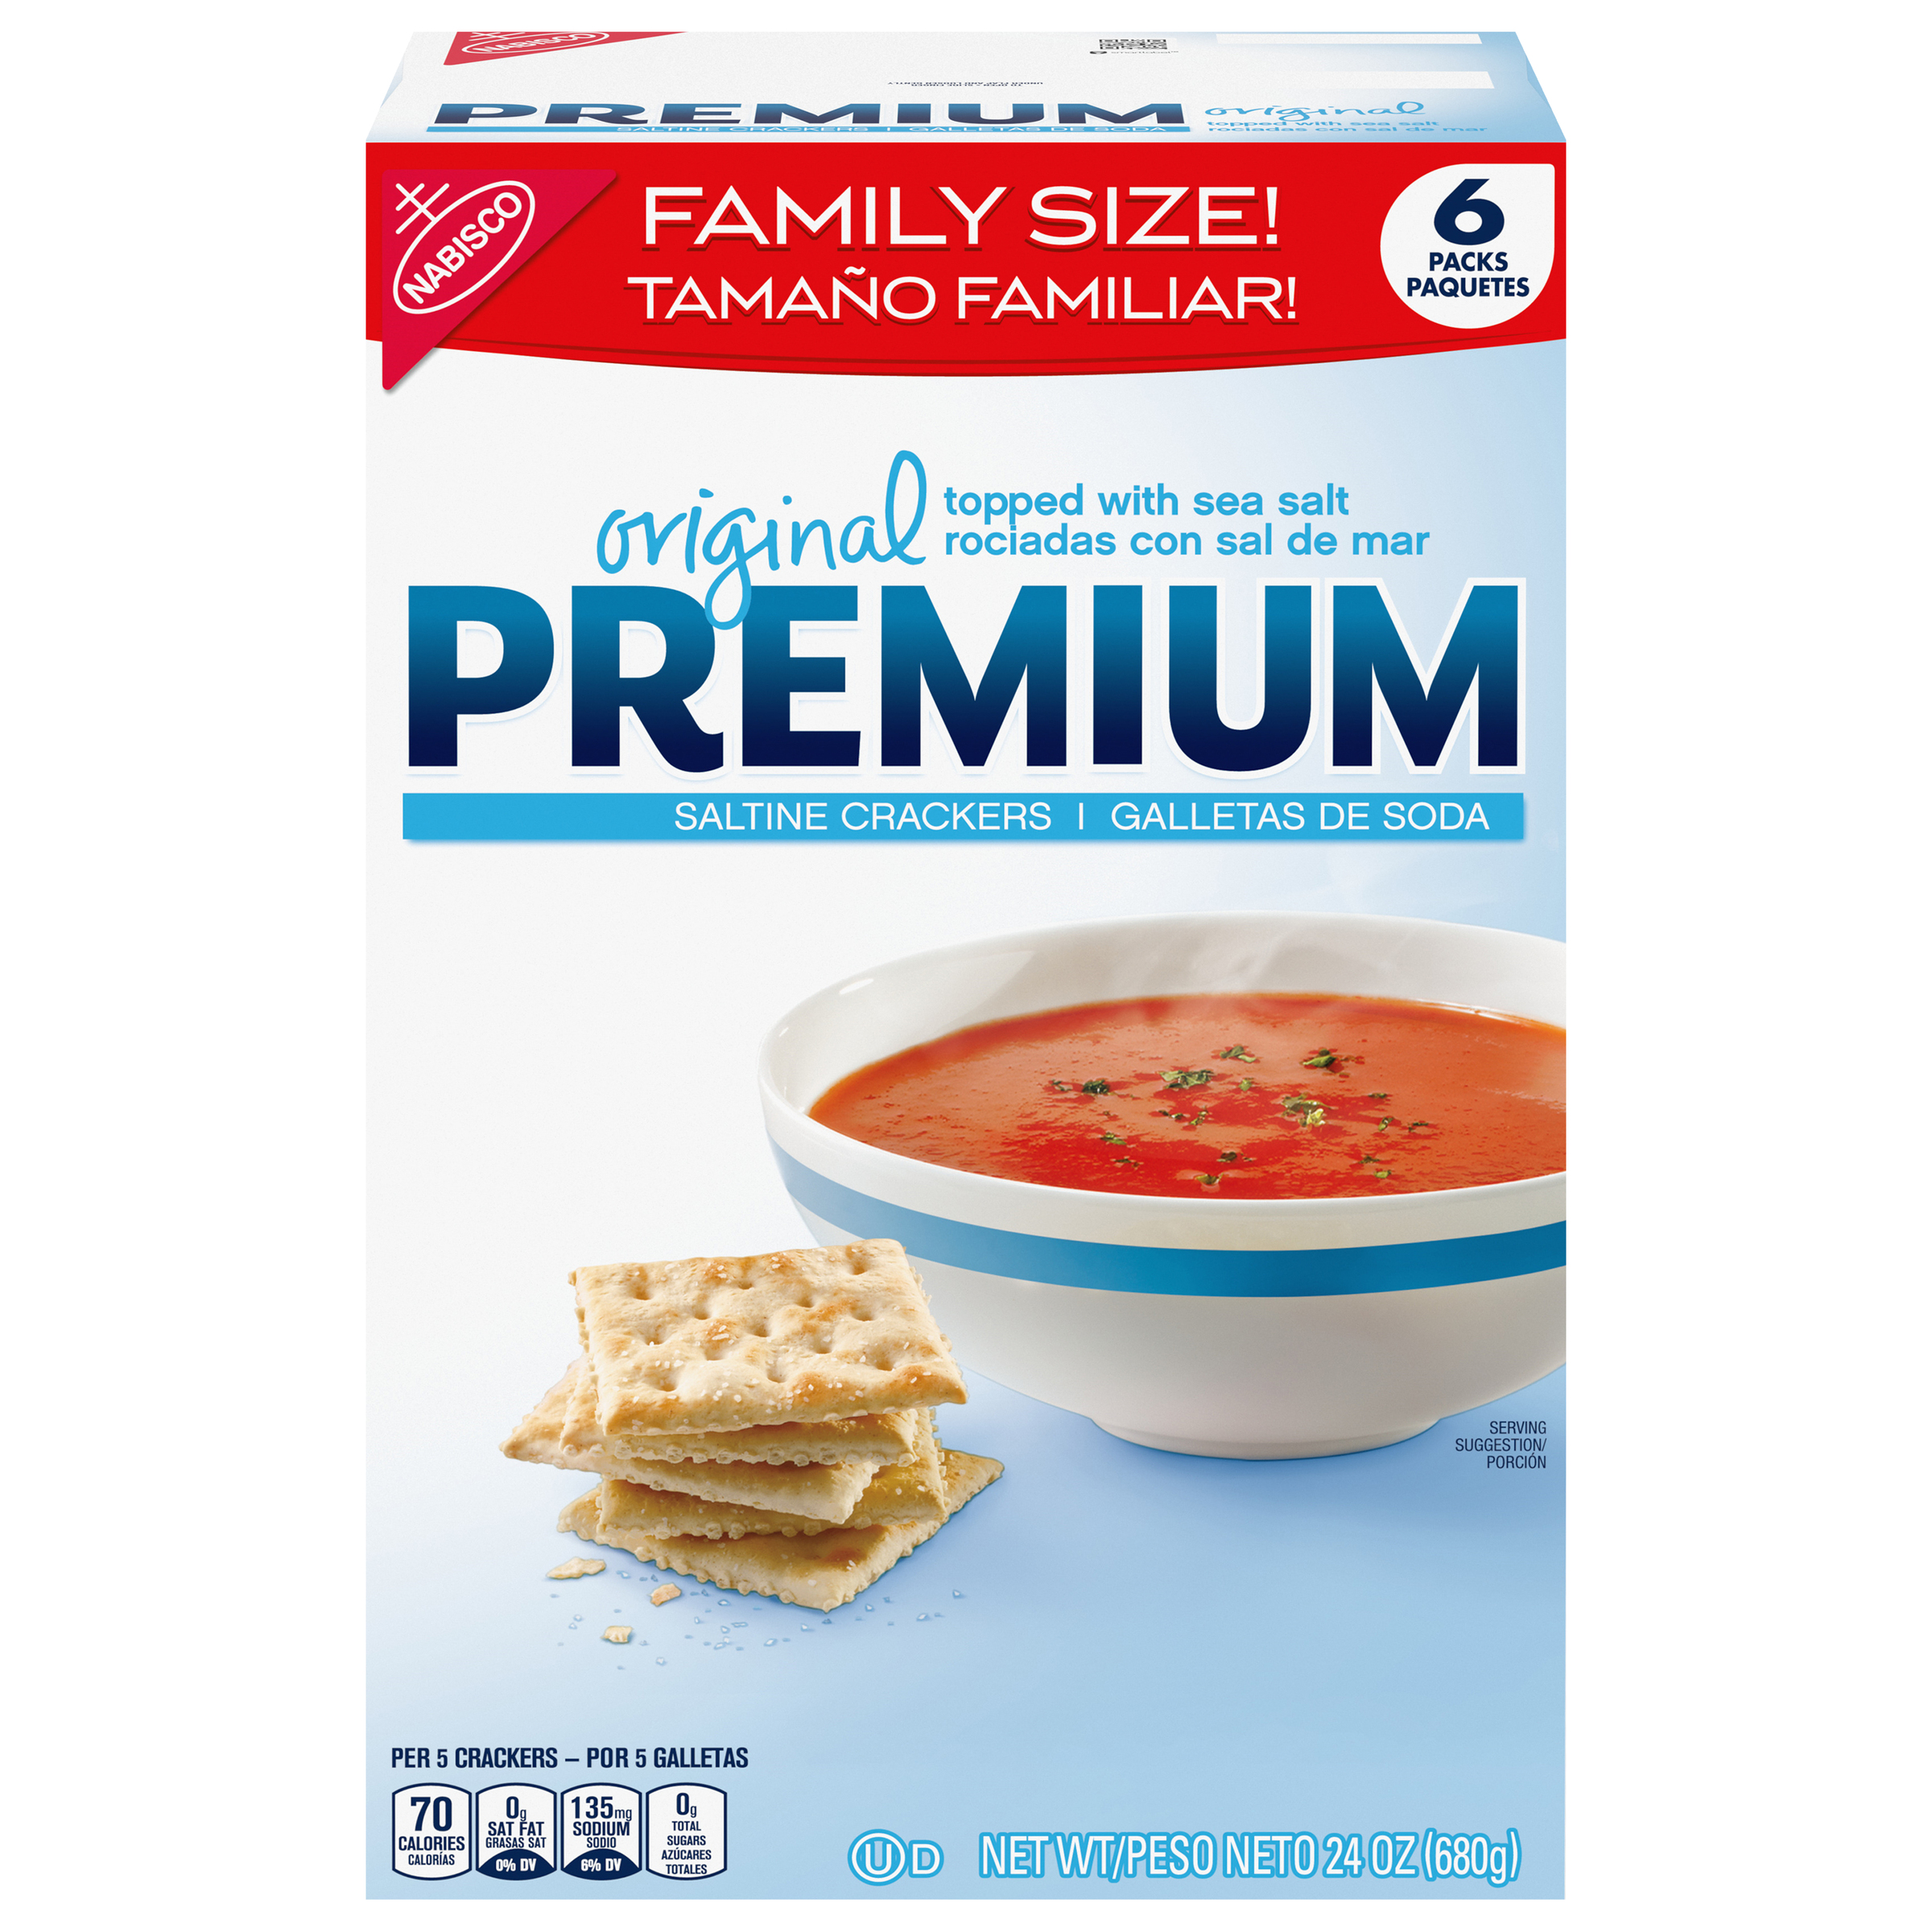 PREMIUM Saltines Crackers 24 oz